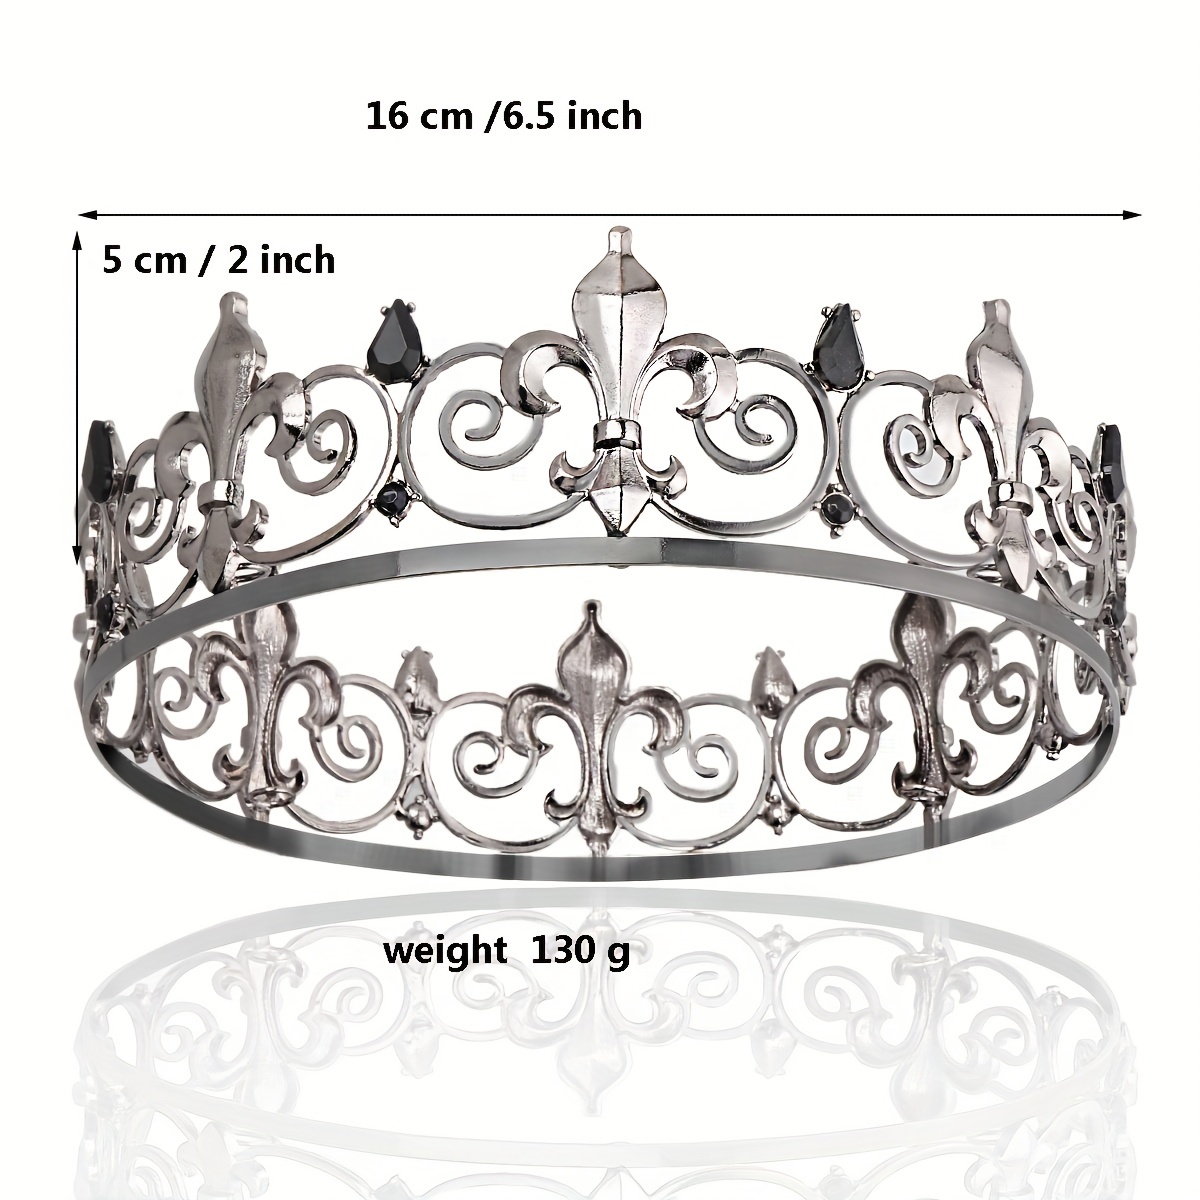 Medieval Crown - Silver/Black